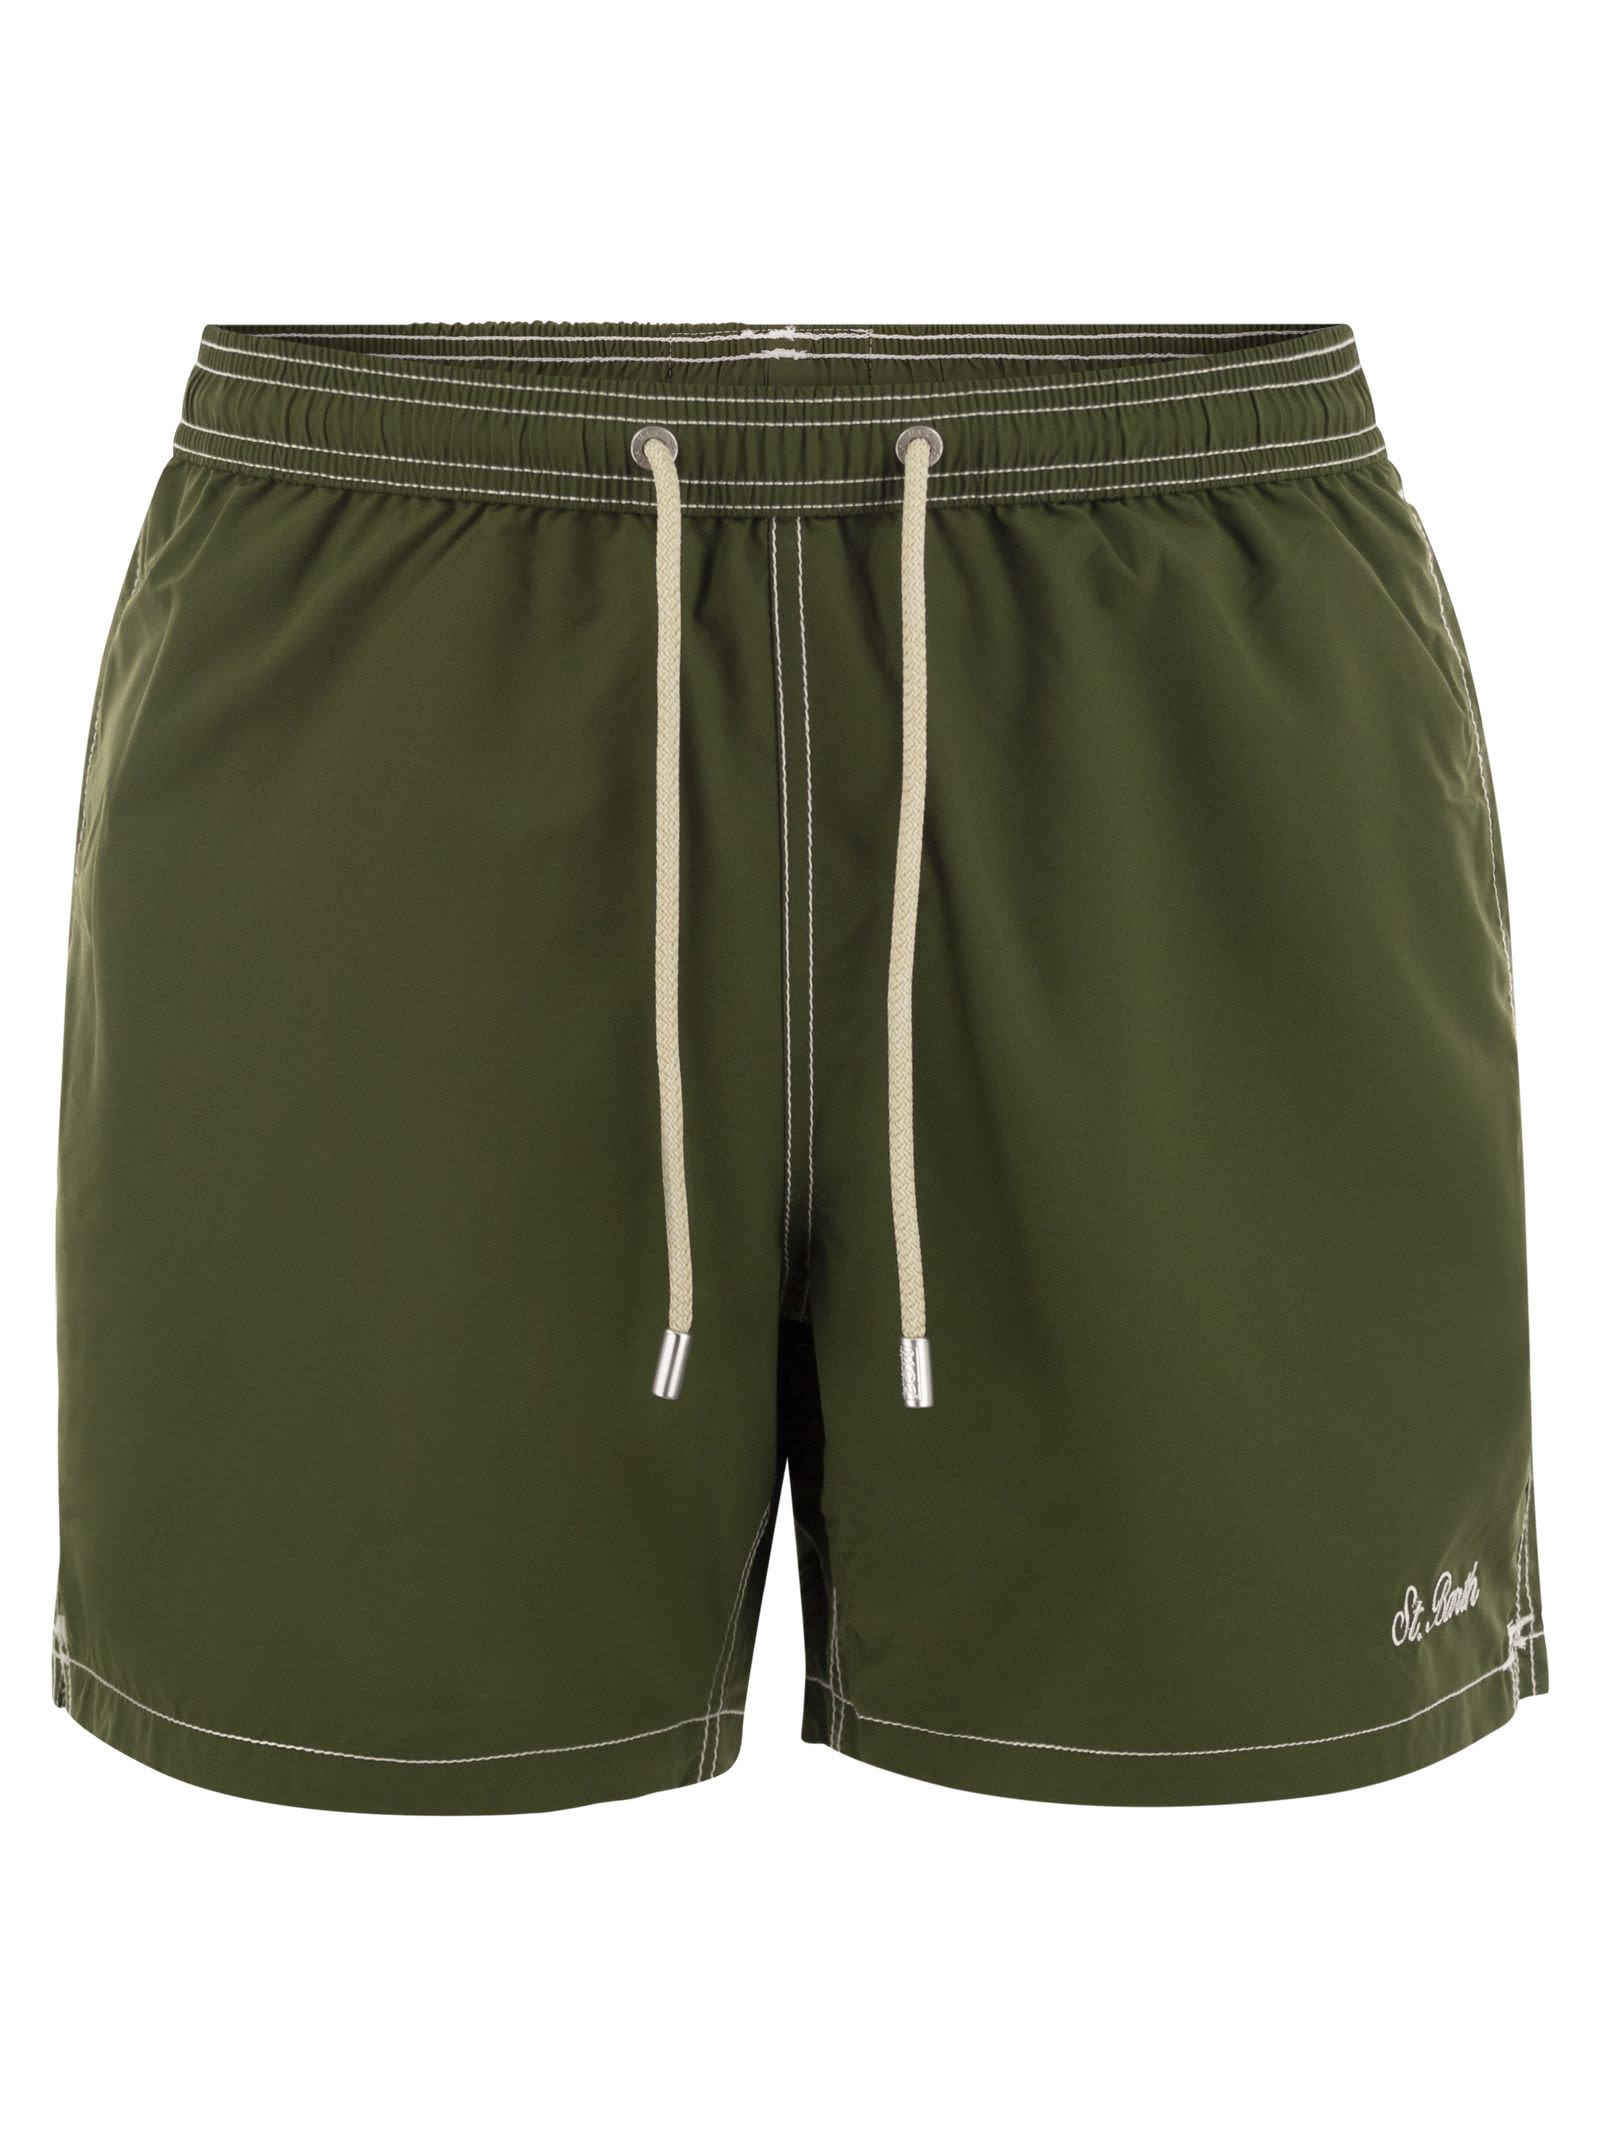 Shop Mc2 Saint Barth Patmos - Beach Shorts In Military Green